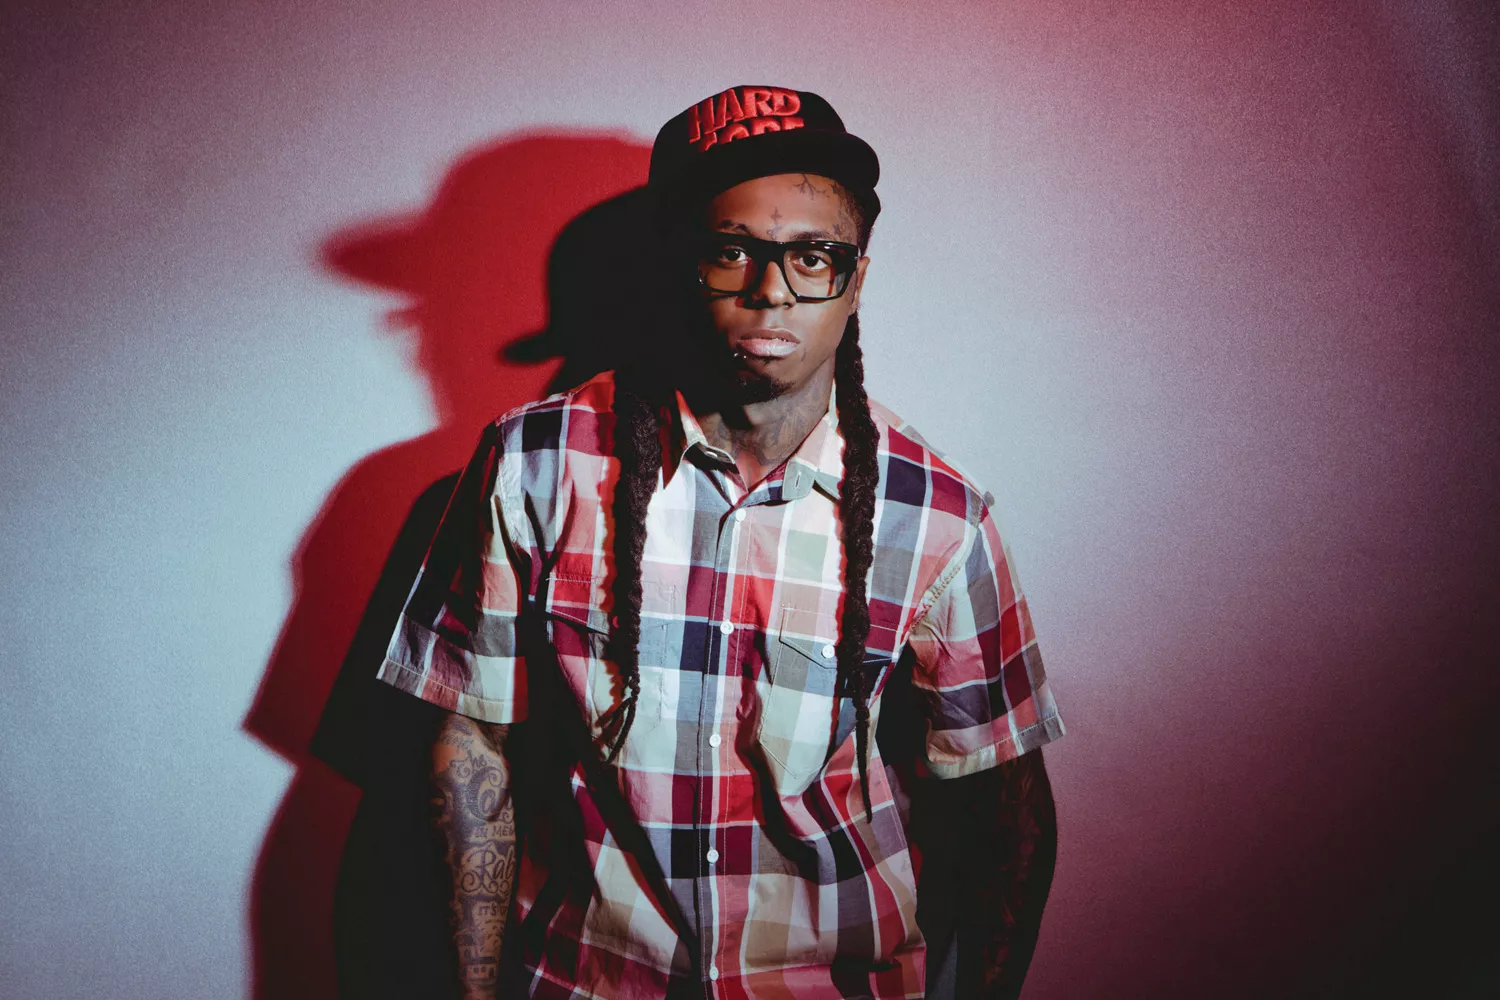 Lil Wayne gjester Oslo Spektrum til våren